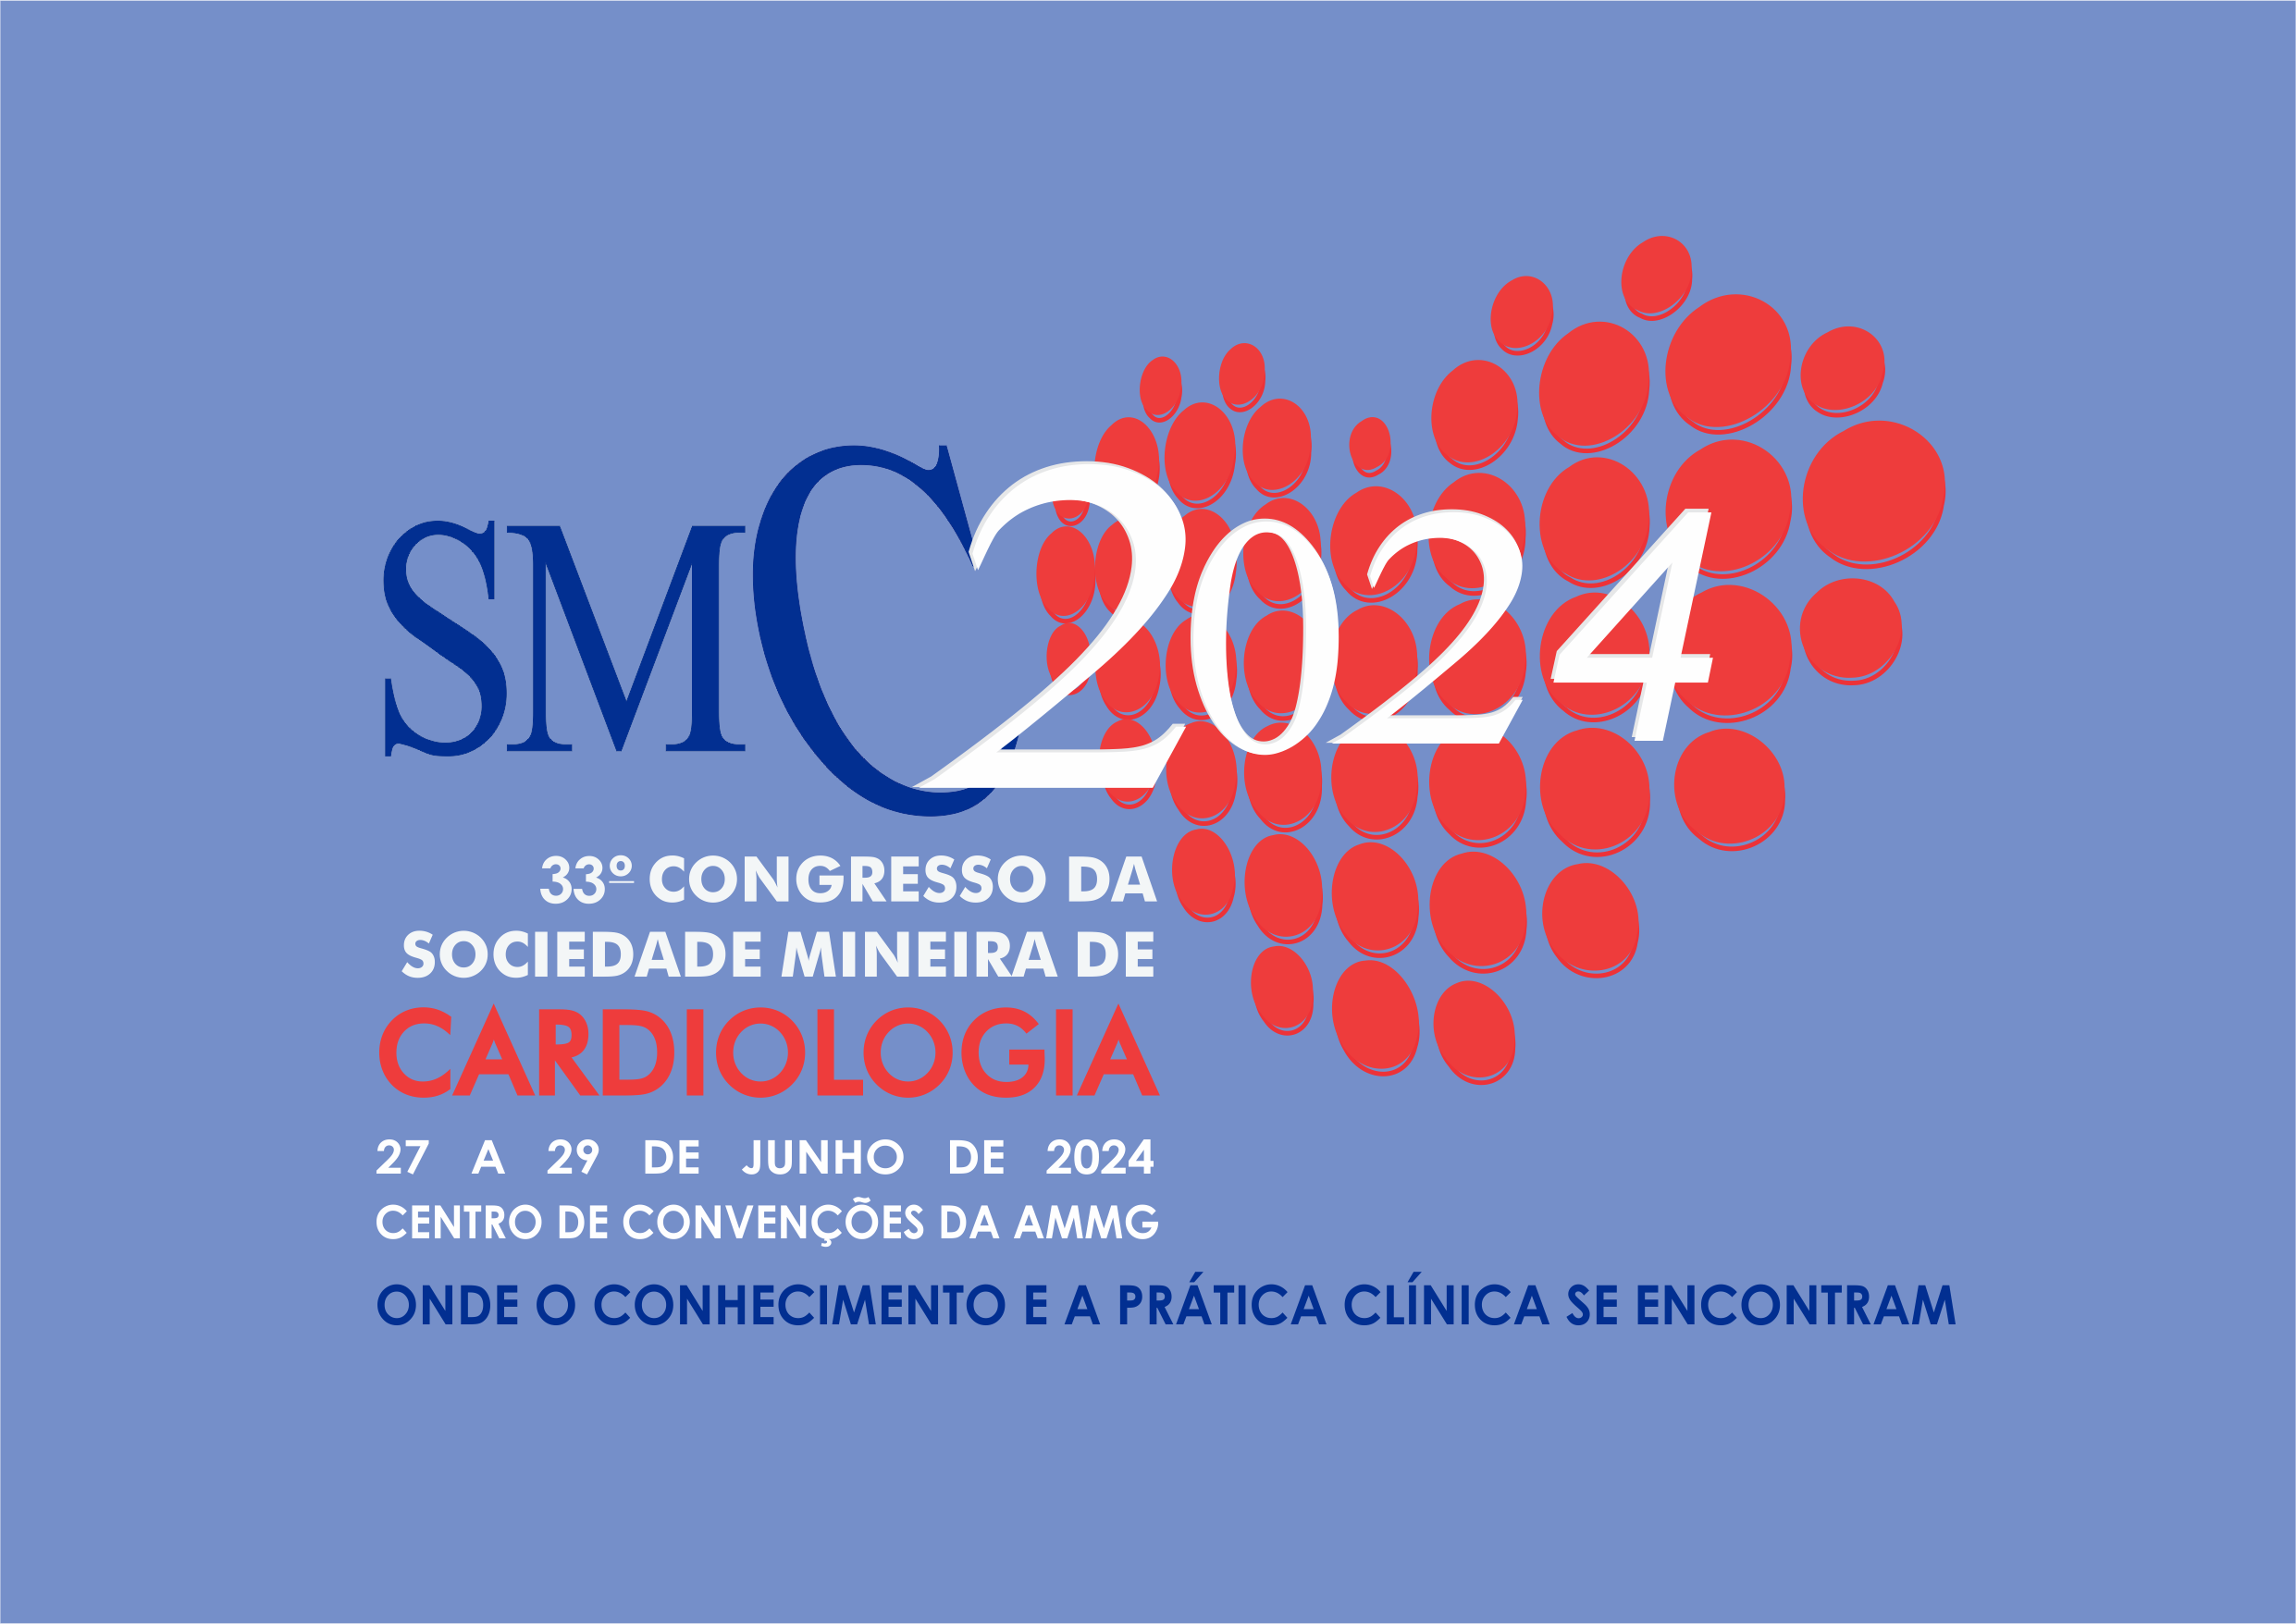 33º Congresso da Sociedade Mineira de Cardiologia - SMC 2024